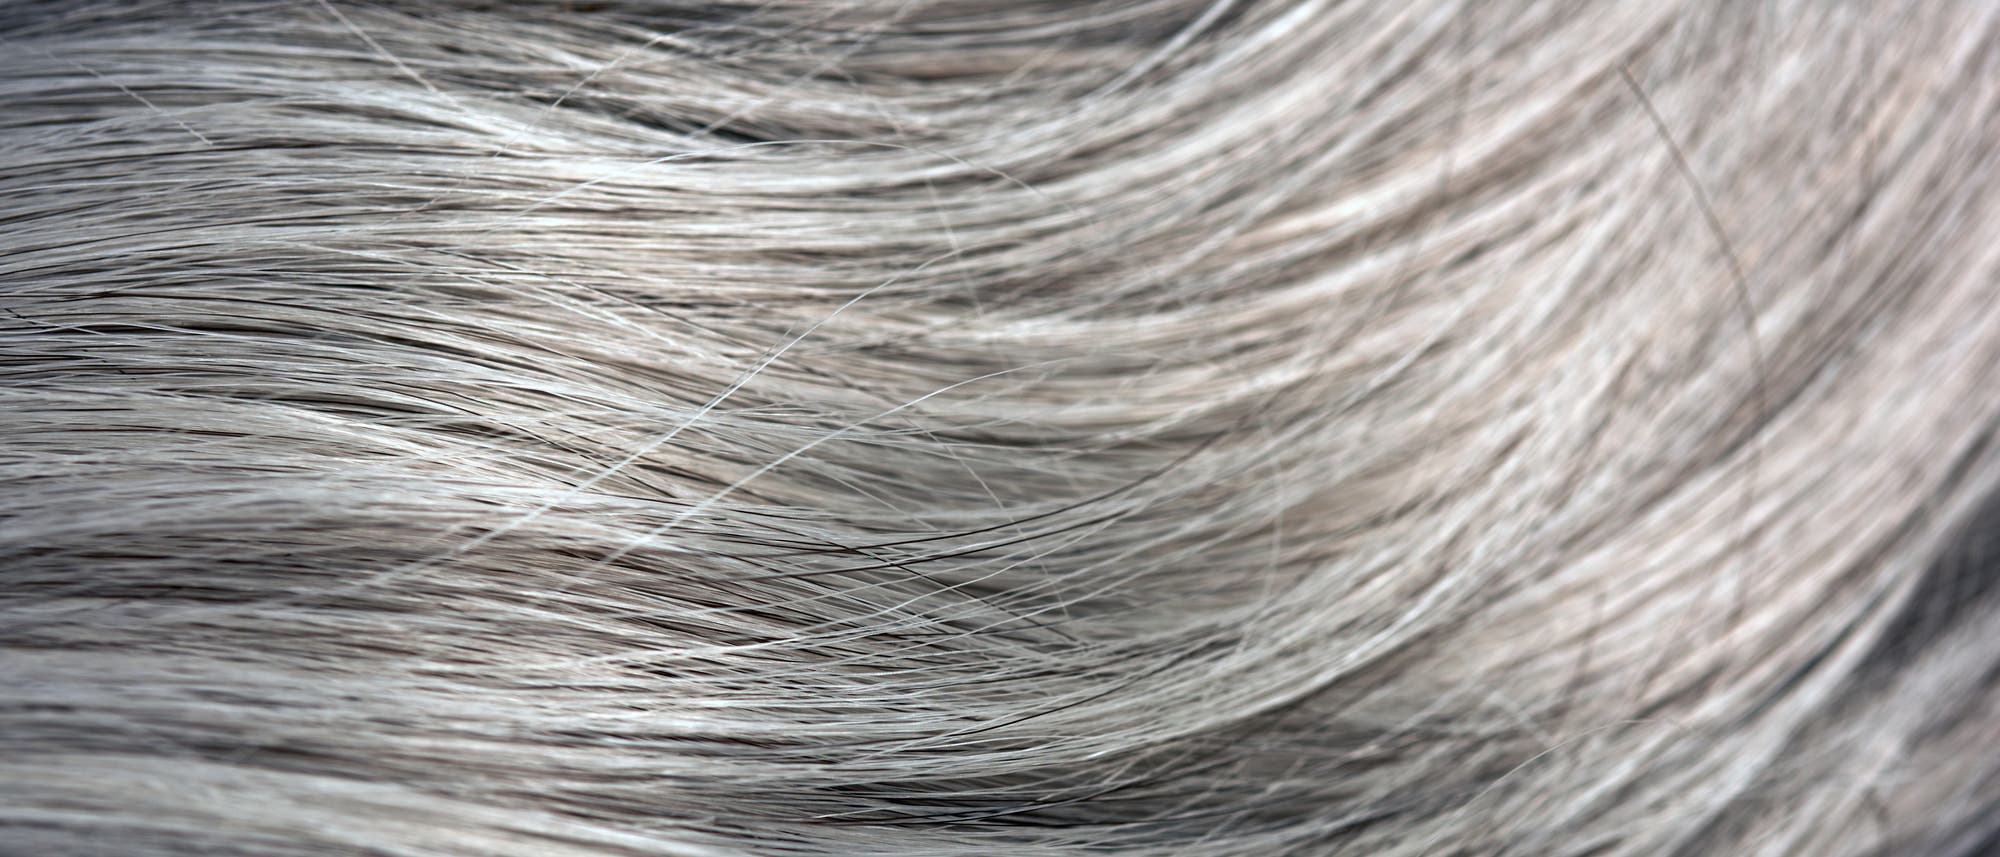 Schwarze haare mit grauen straehnen